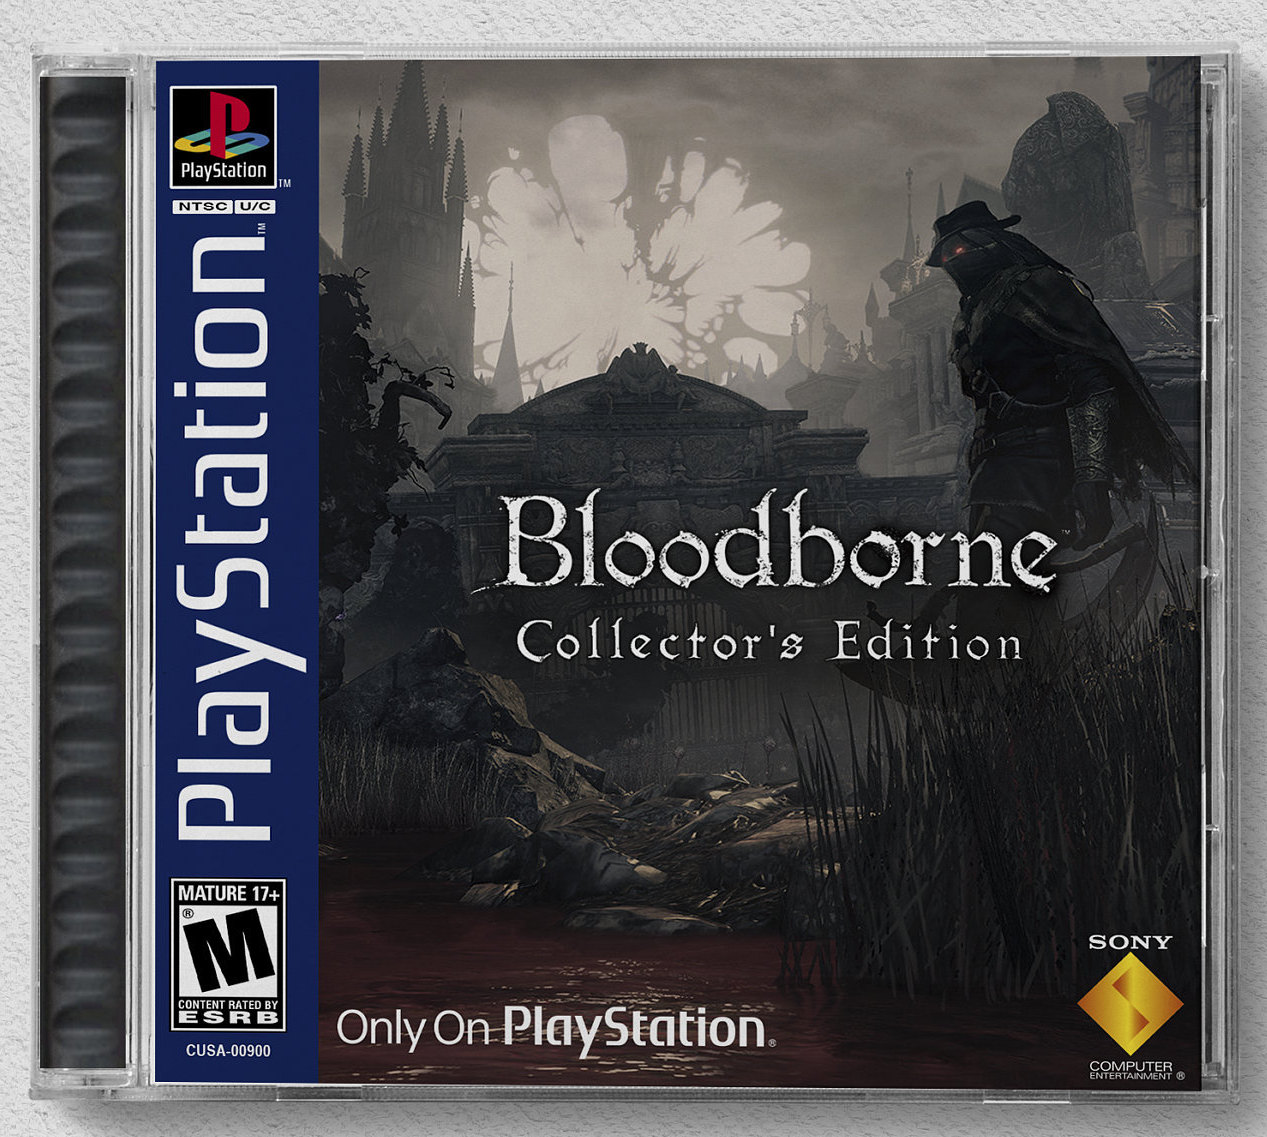 Bloodborne PSX Digital Download Price Comparison